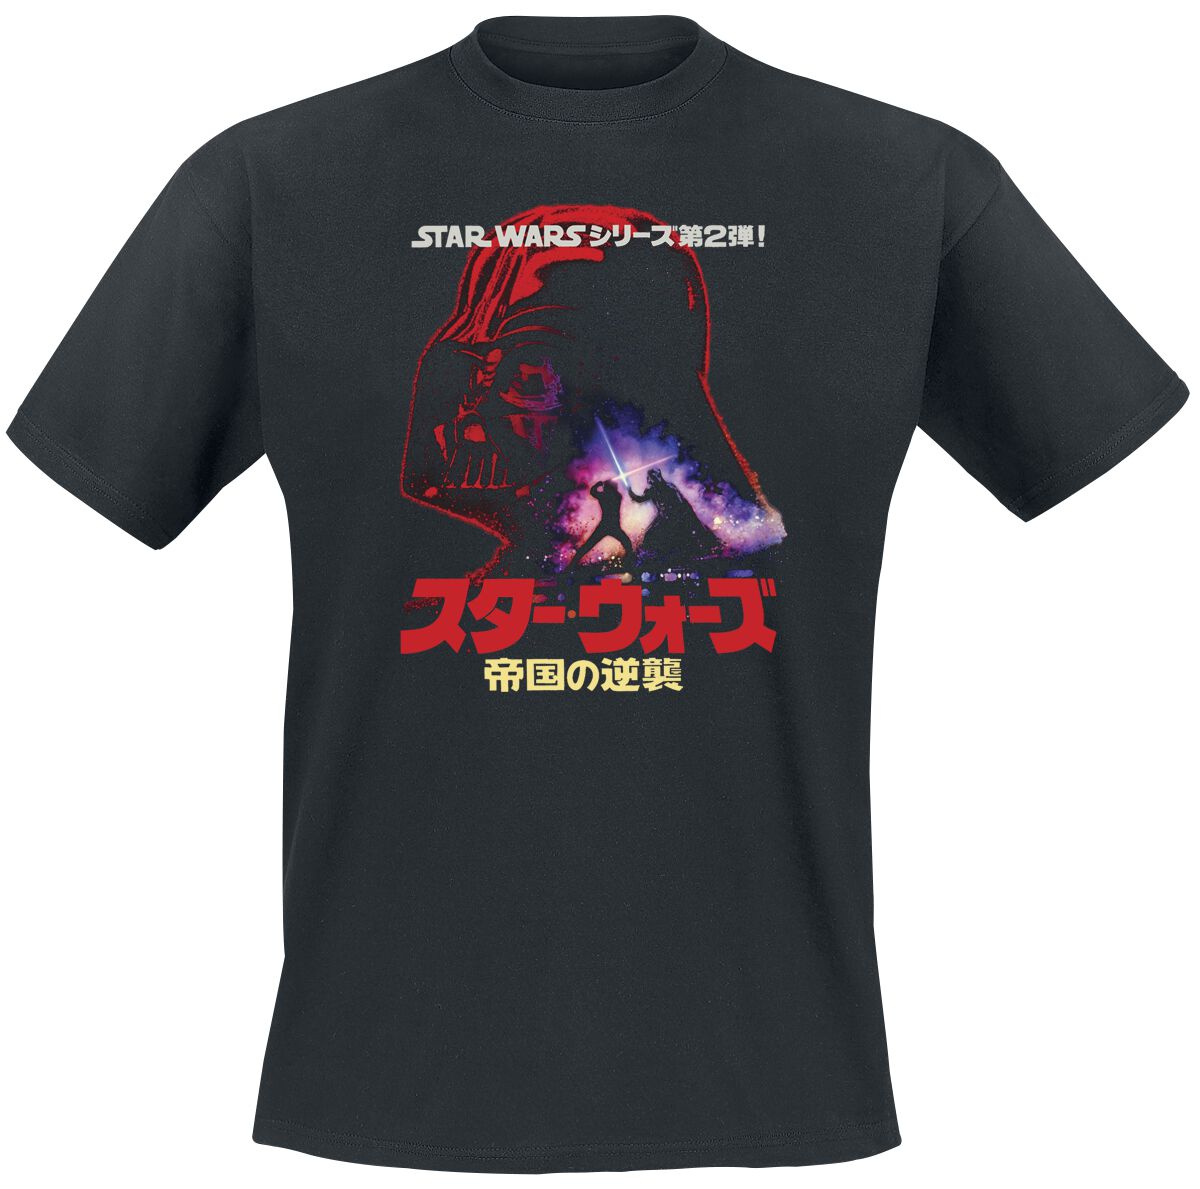 Star Wars Darth Vader - Poster T-Shirt schwarz in M